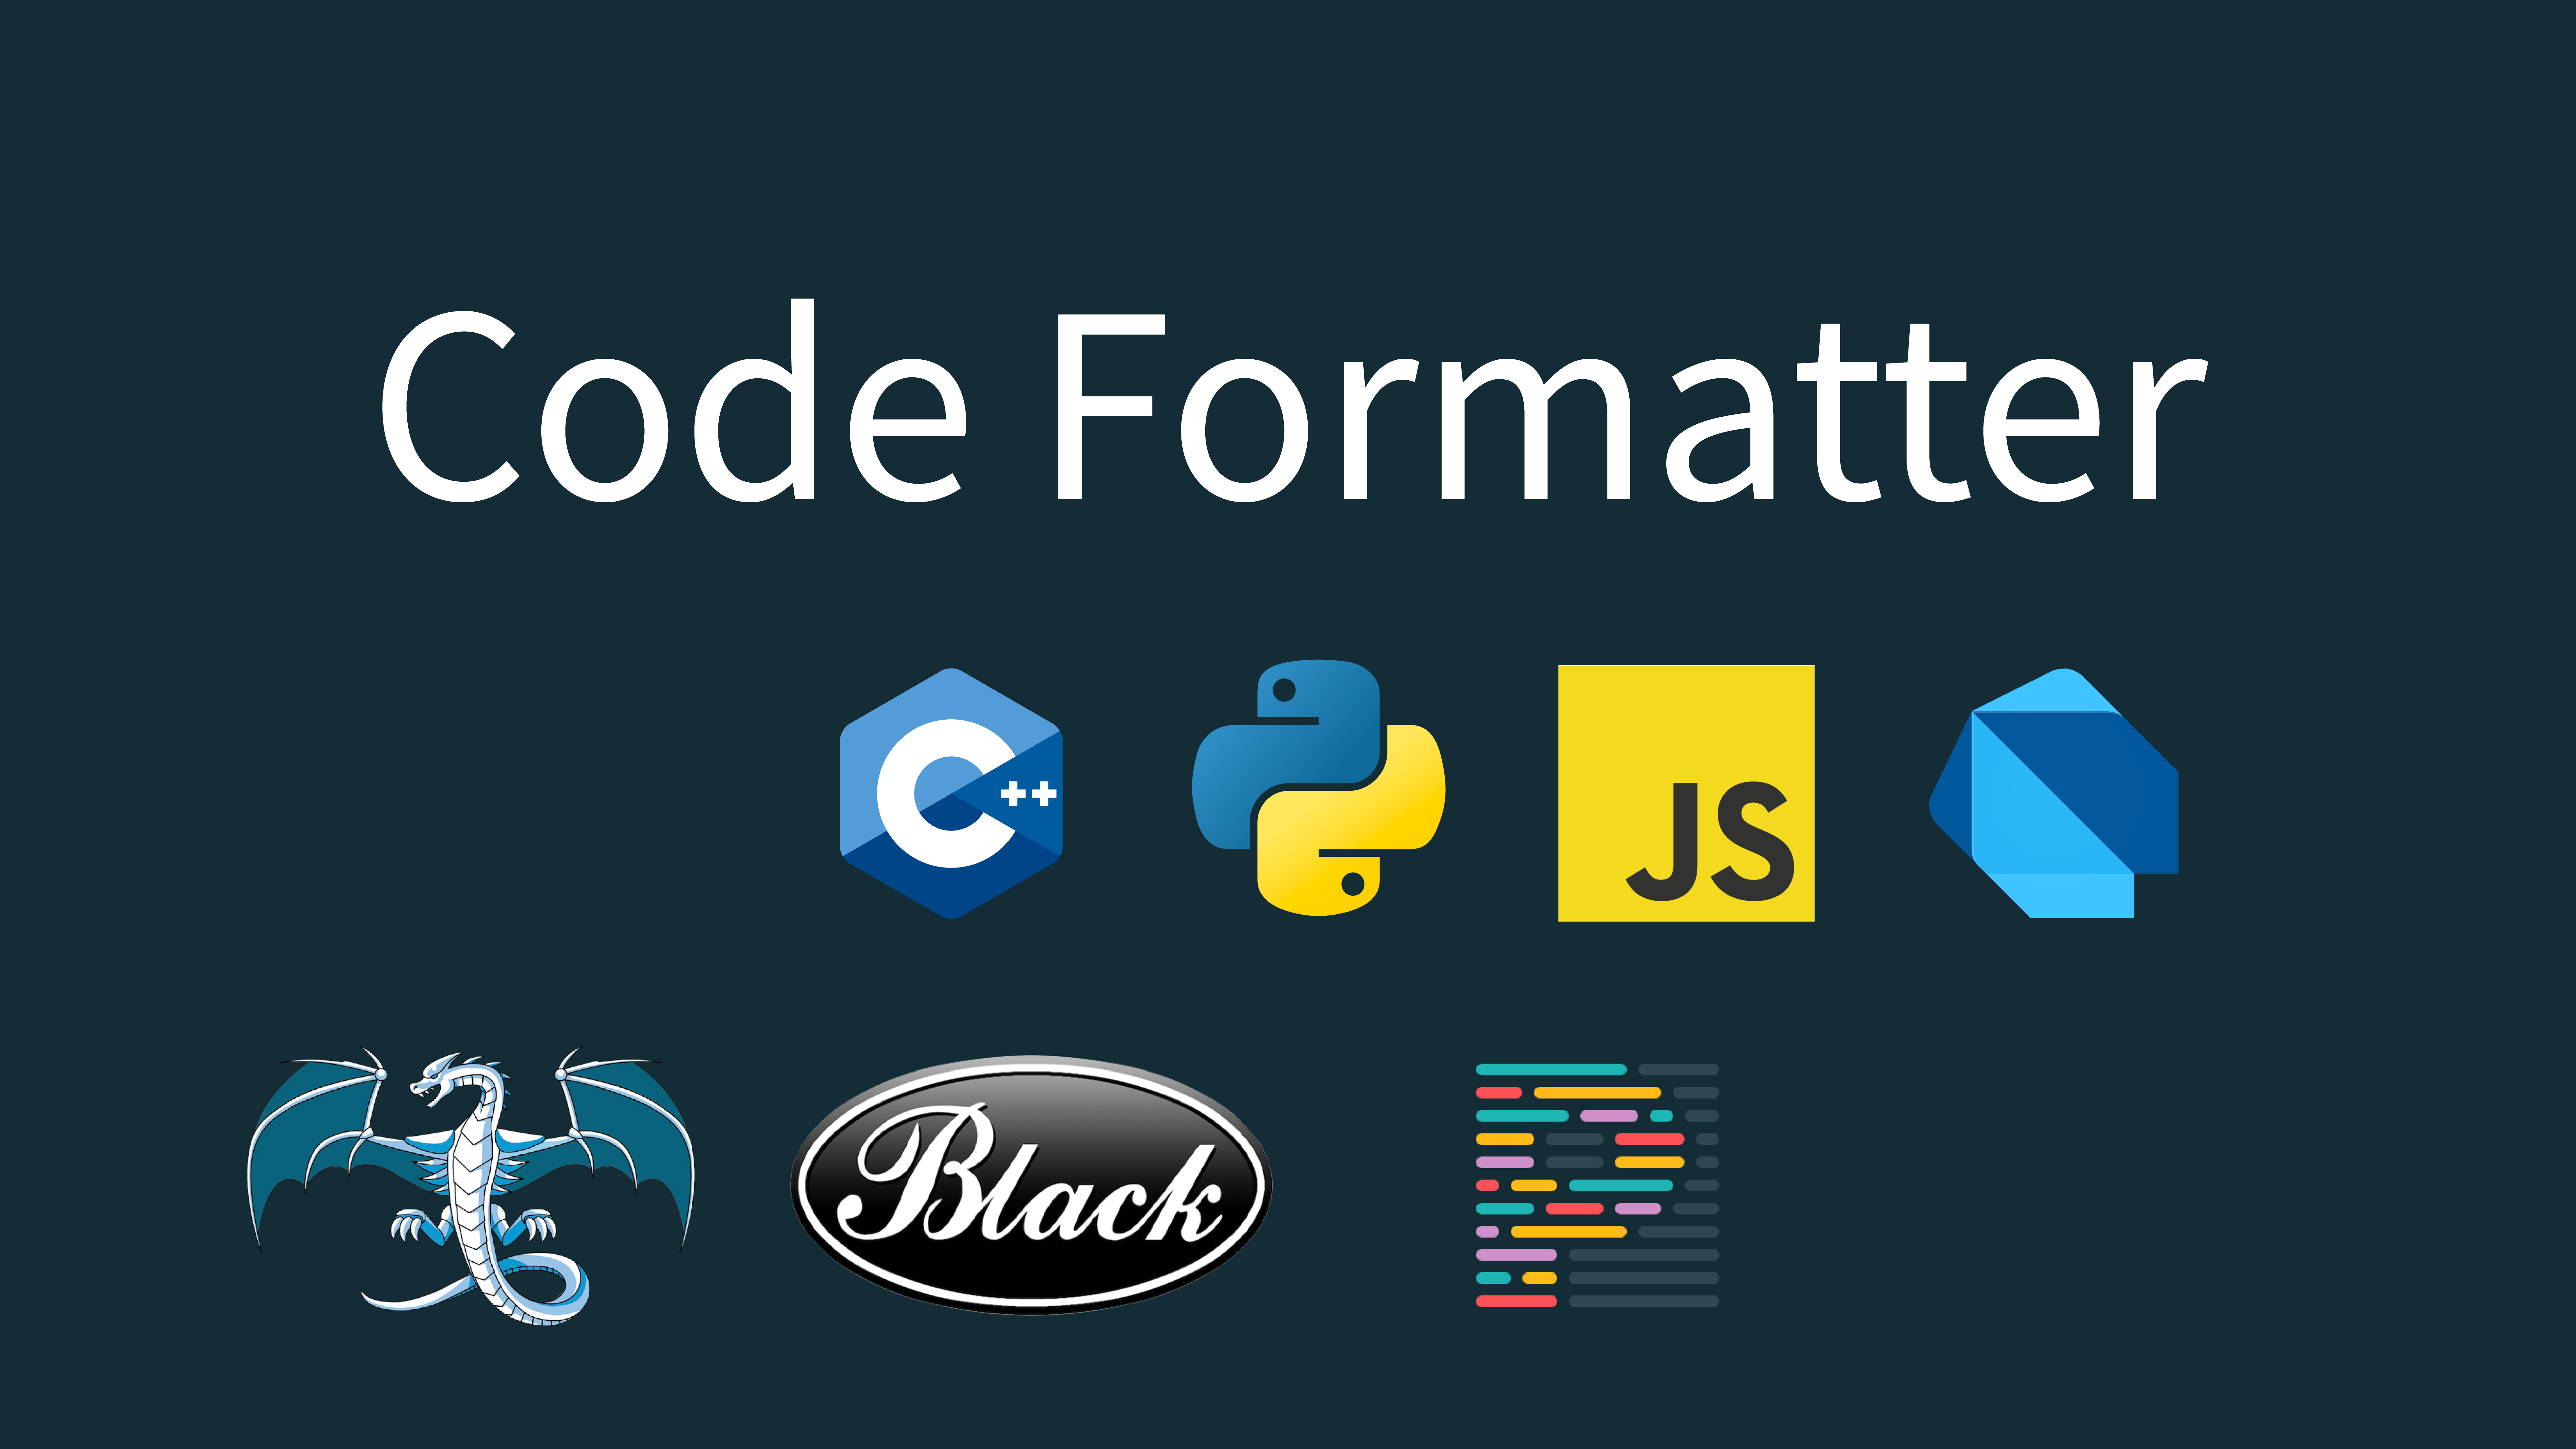 Code Formatter 종류와 로고